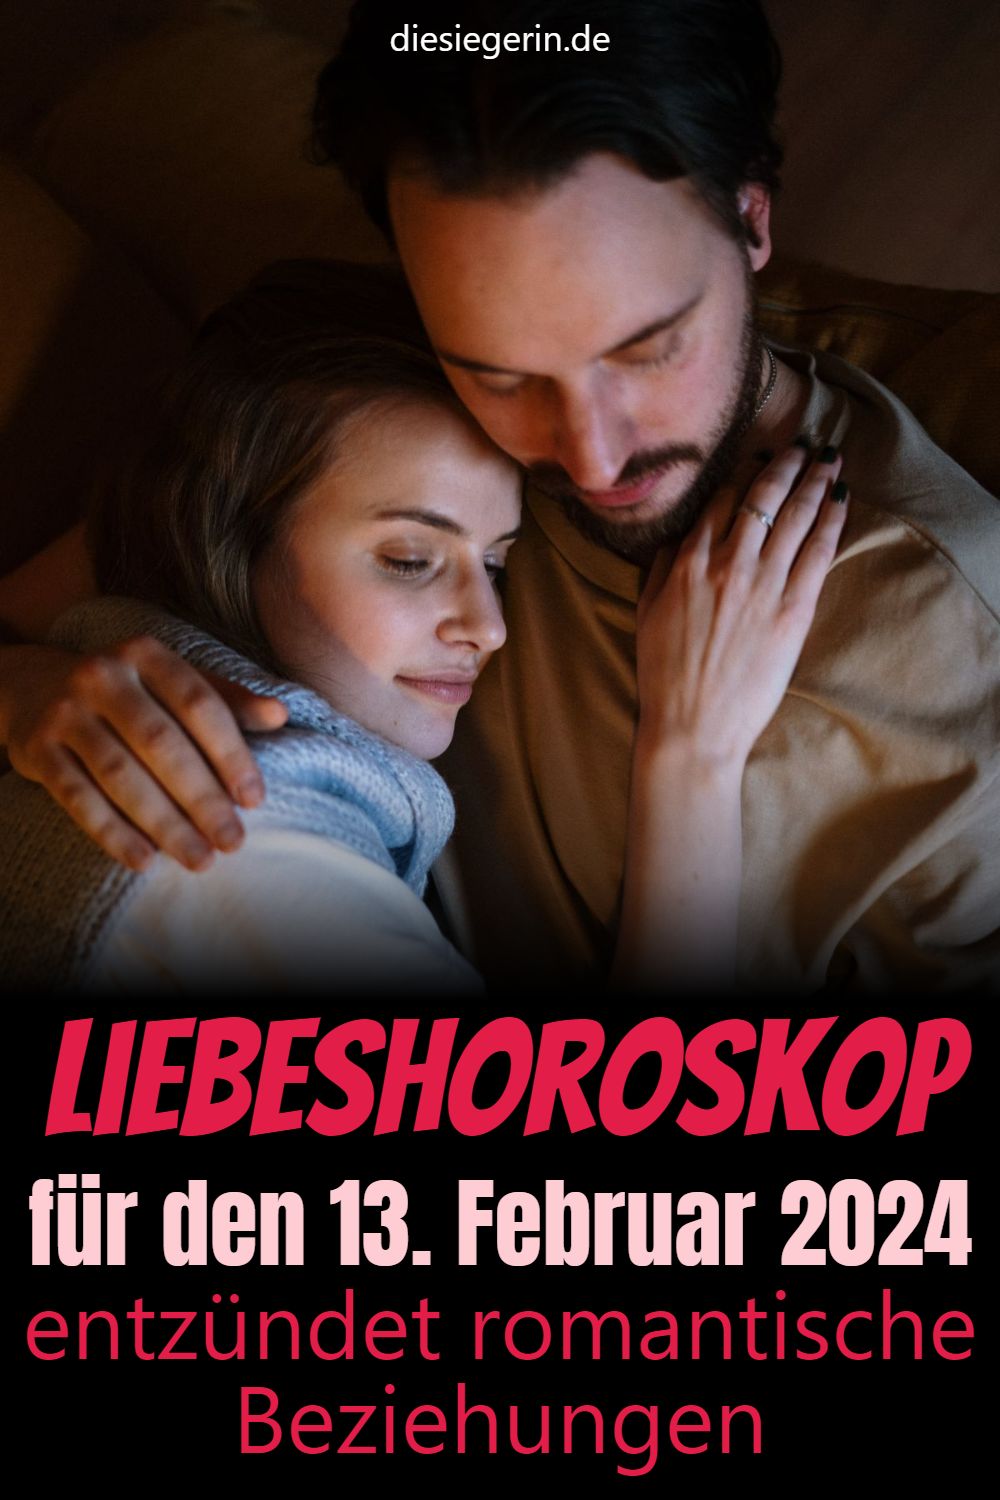 Liebeshoroskop für den 13. Februar 2024 entzündet romantische Beziehungen